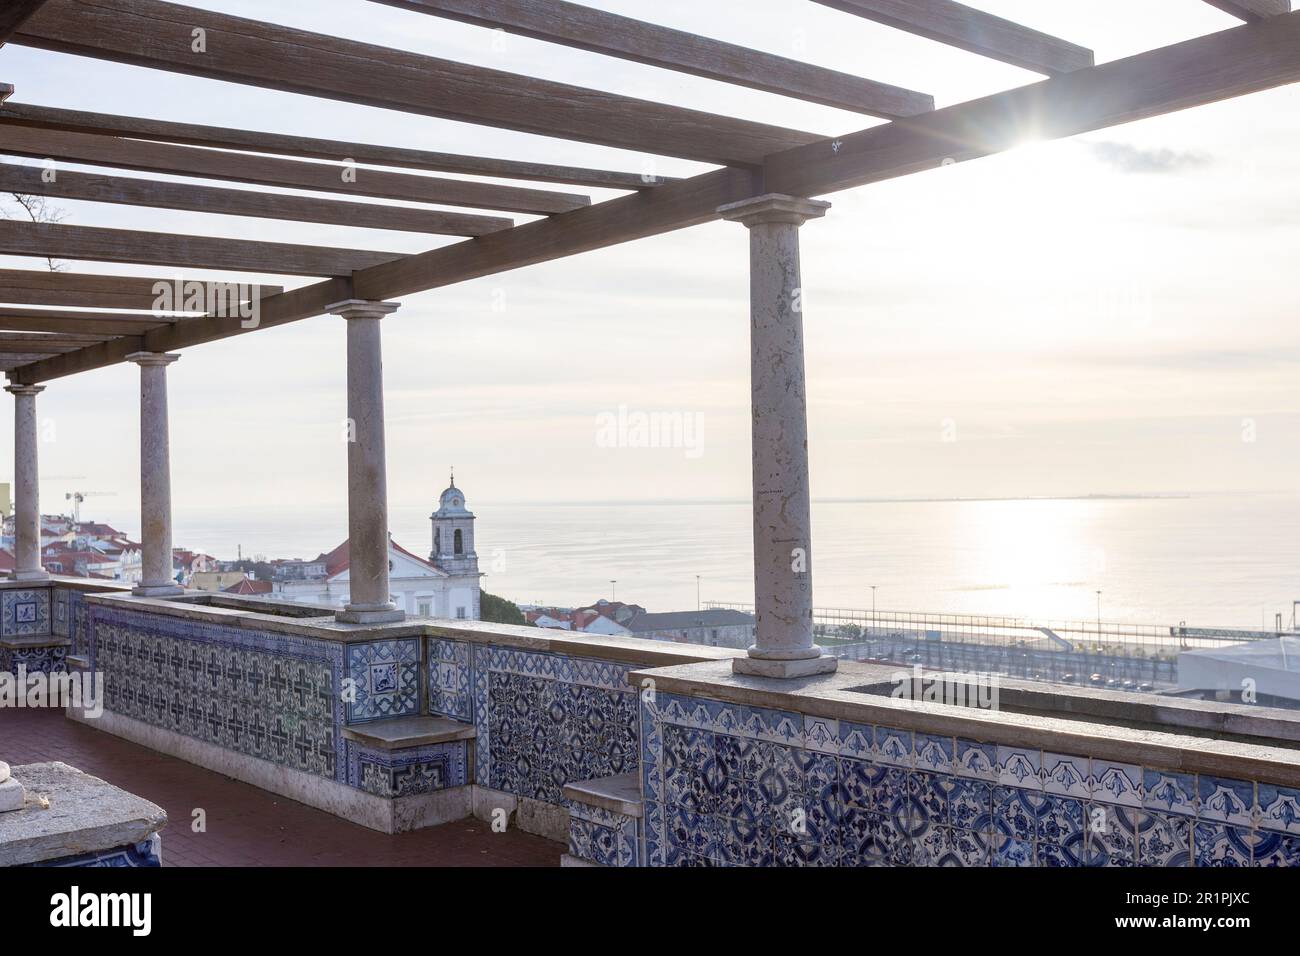 Miradouro de Santa Luzia, une terrasse d'observation avec une pergola offrant une vue spectaculaire sur Lisbonne et le Tage Banque D'Images